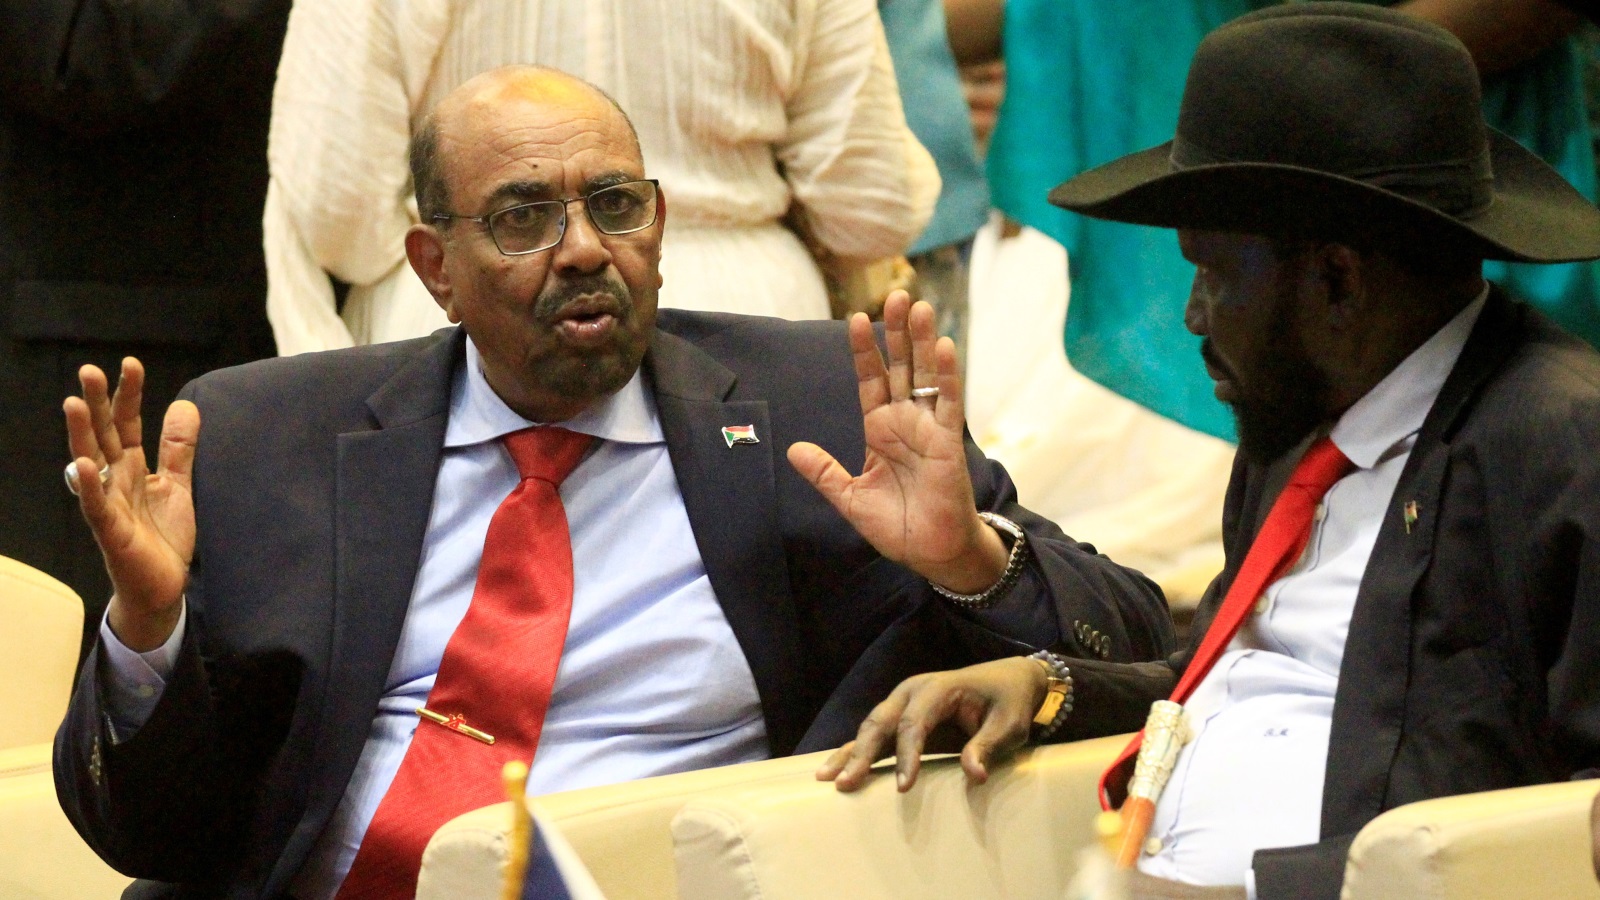 كان تحييد الصراعين الرئيسيين في السودان يرجع في جزء كبير منه إلى اتفاقات بين البشير نفسه ورئيس جنوب السودان سلفا كير، إضافة إلى التقارب مع الزعيم التشادي إدريس ديبي